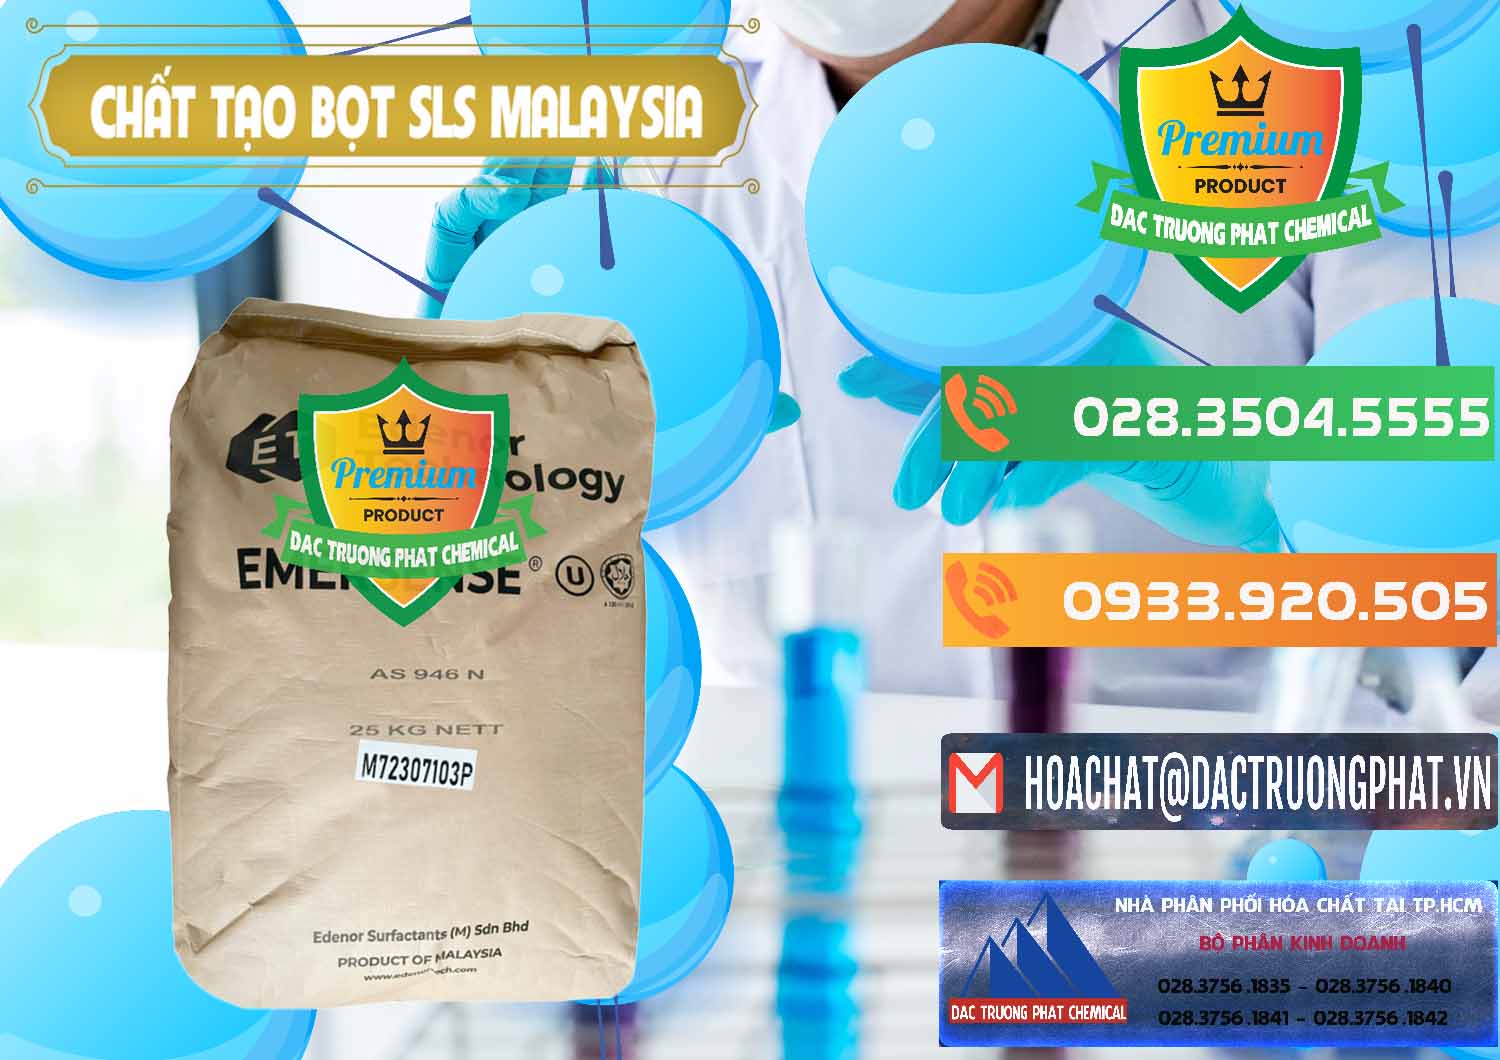 Nơi chuyên bán _ cung ứng Chất Tạo Bọt SLS Emersense Mã Lai Malaysia - 0381 - Công ty chuyên nhập khẩu - phân phối hóa chất tại TP.HCM - hoachatxulynuoc.com.vn